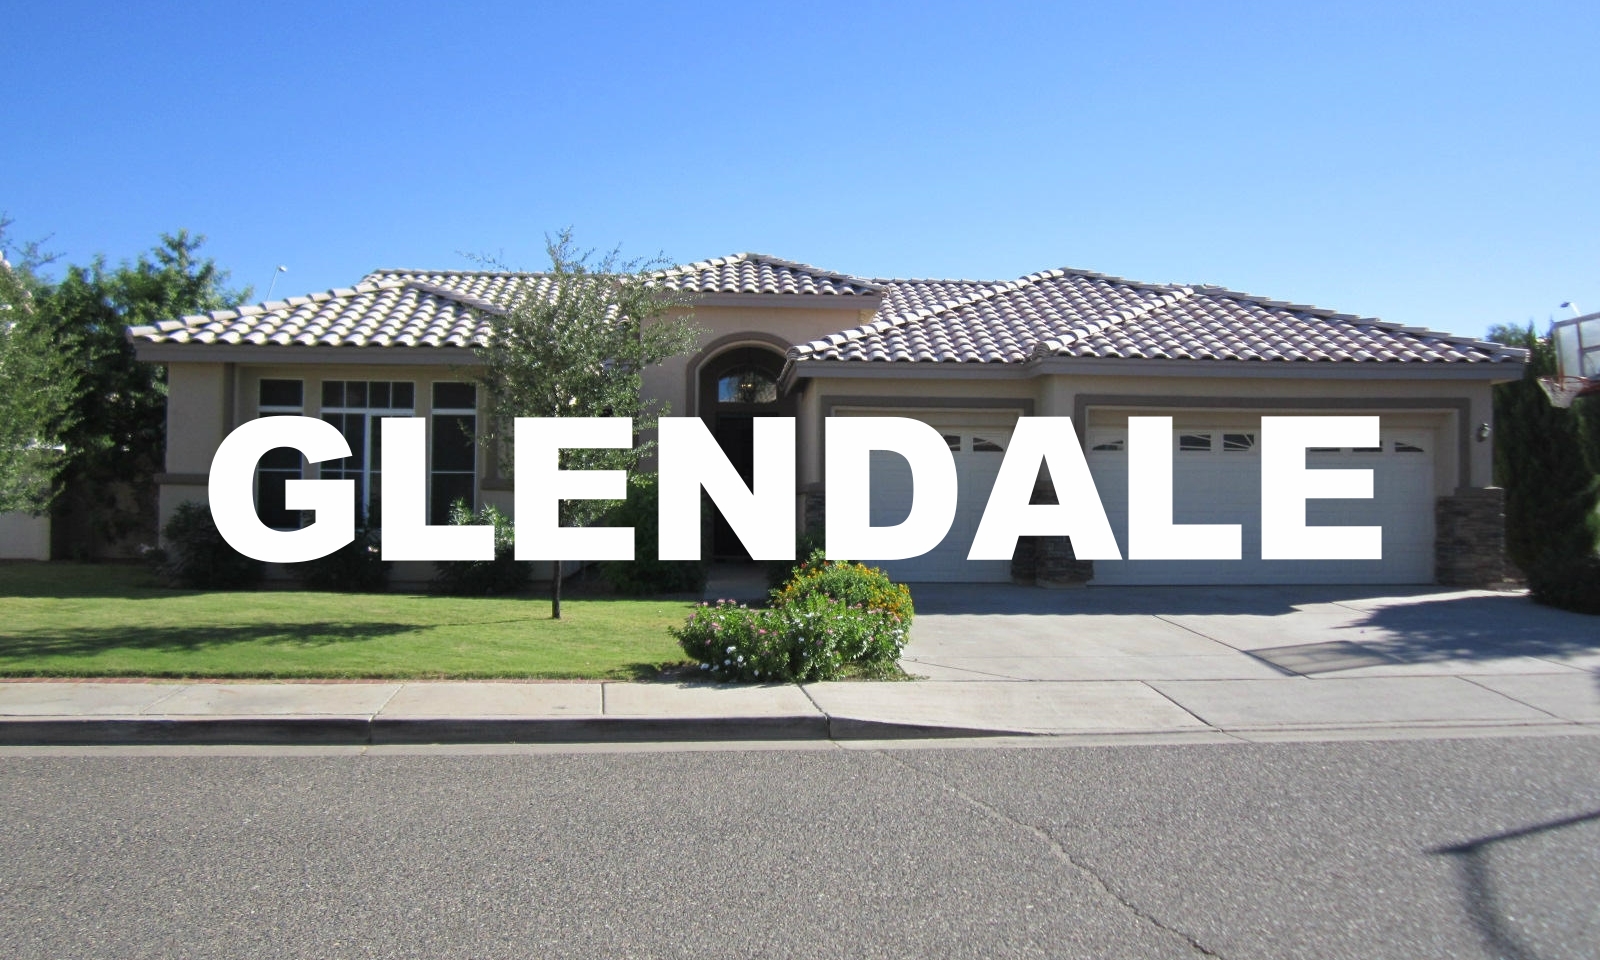 Glendale.jpg